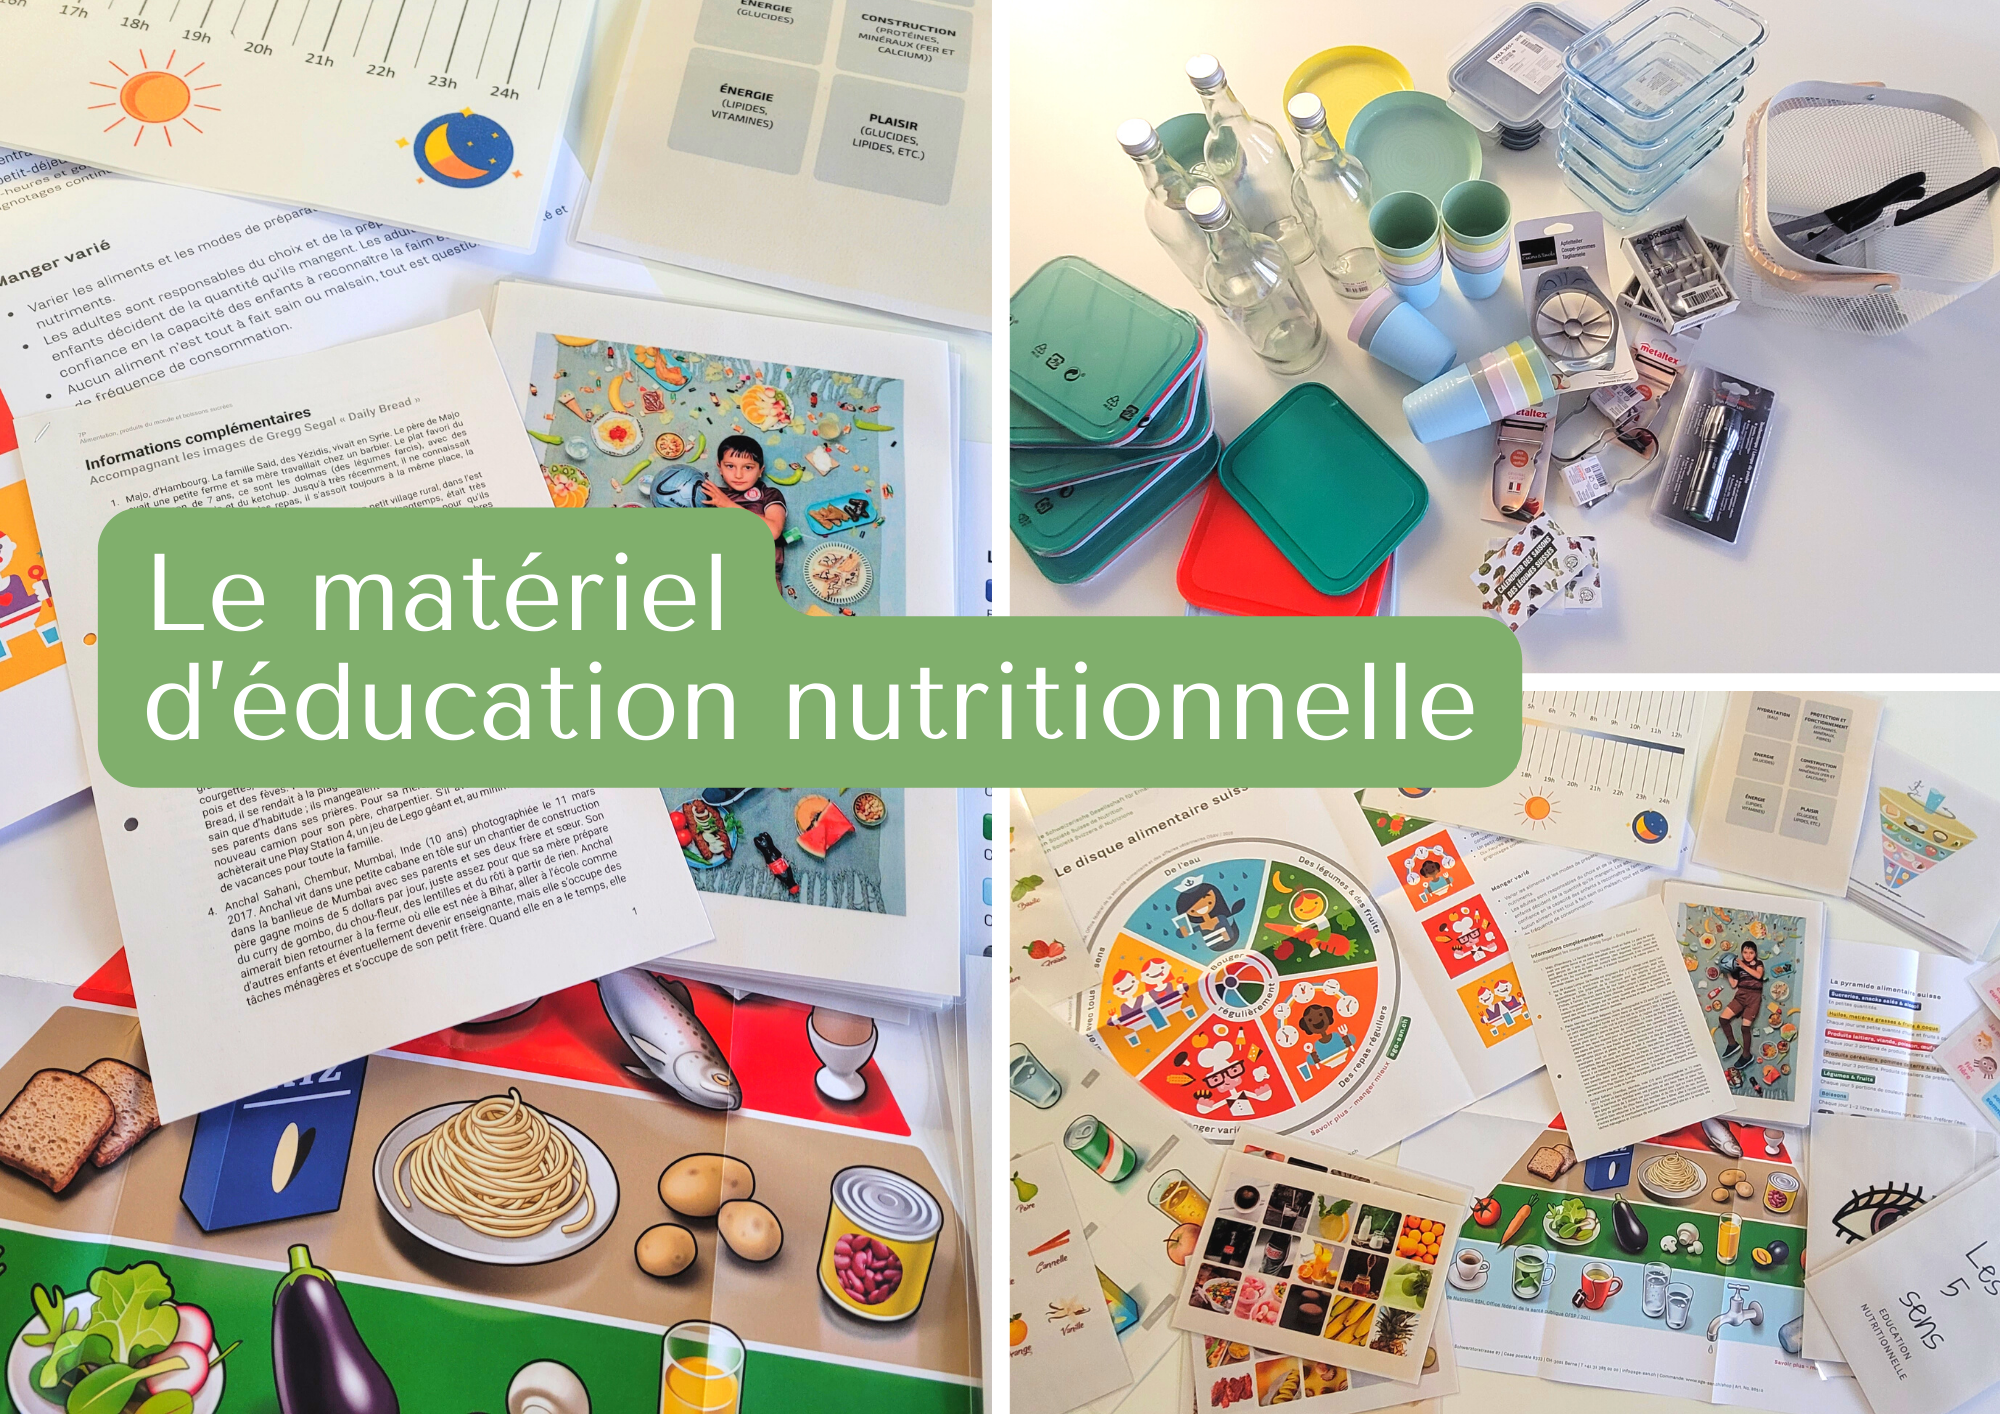 02_education-nutritionnelle_materiel-didactique Fondation O2